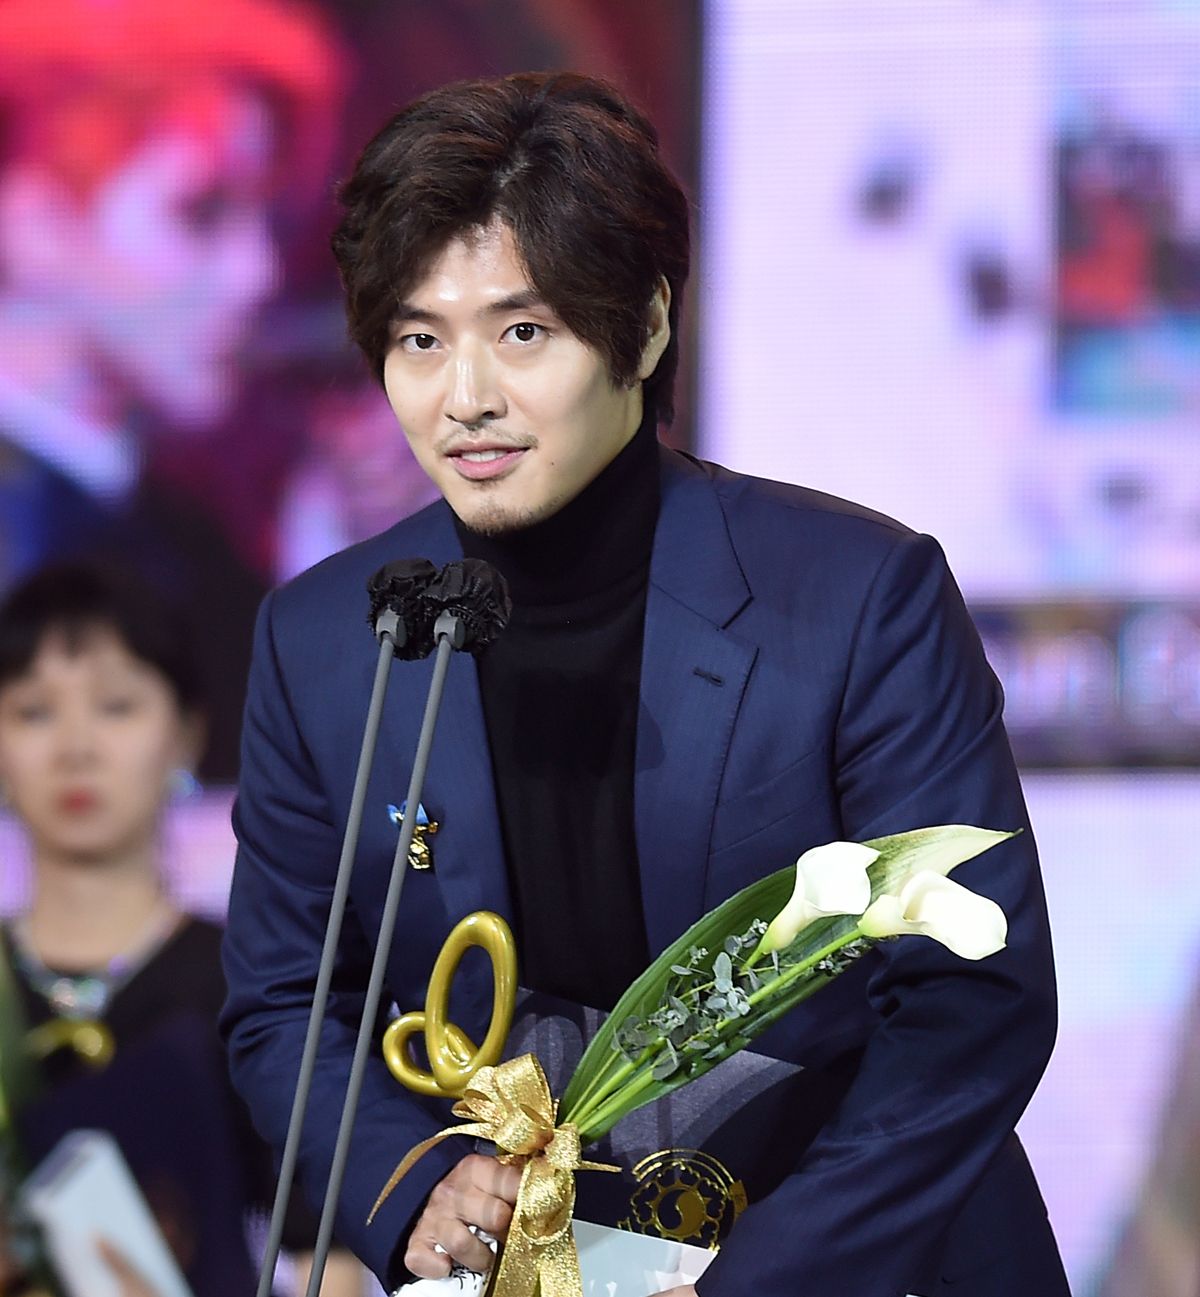 韓流大好きライターが選ぶ 年に最も輝いた韓国イケメン俳優top10